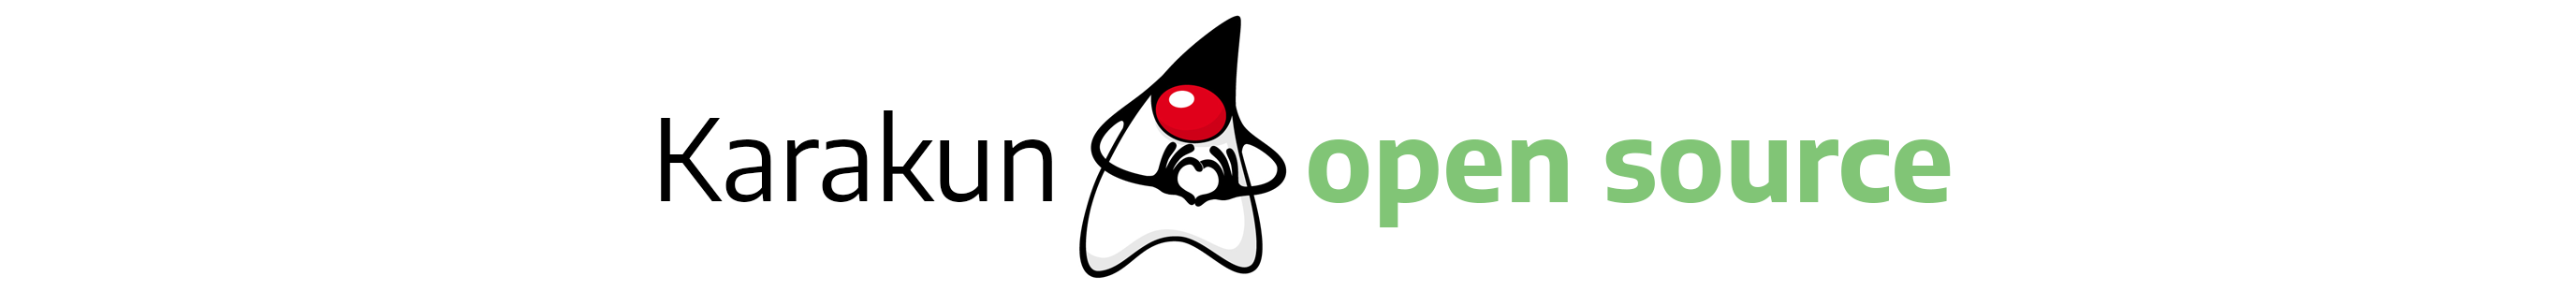 Karakun loves open source